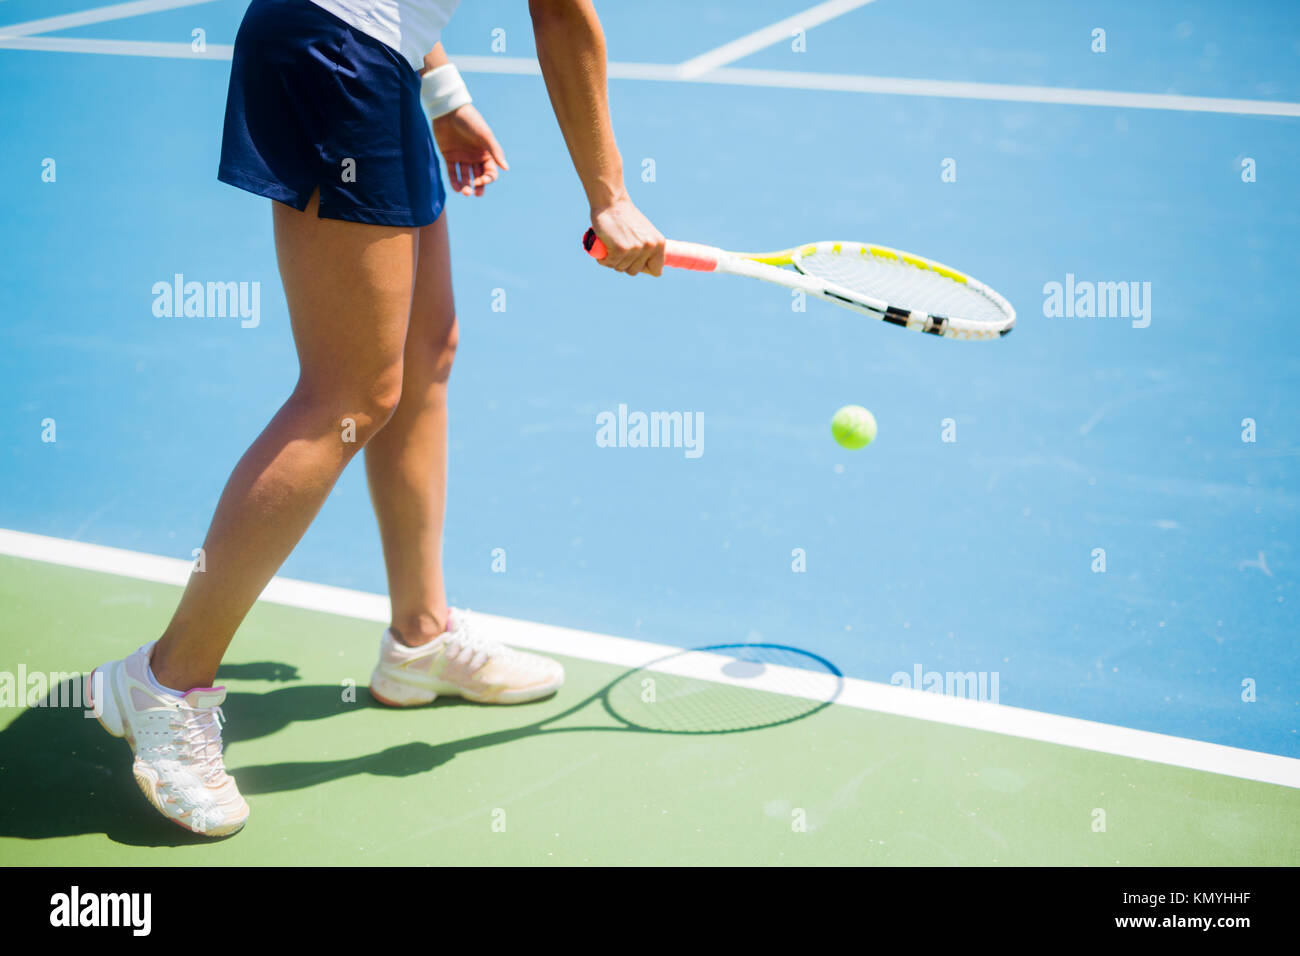 Bellissima femmina giocatore di tennis che serve Foto Stock